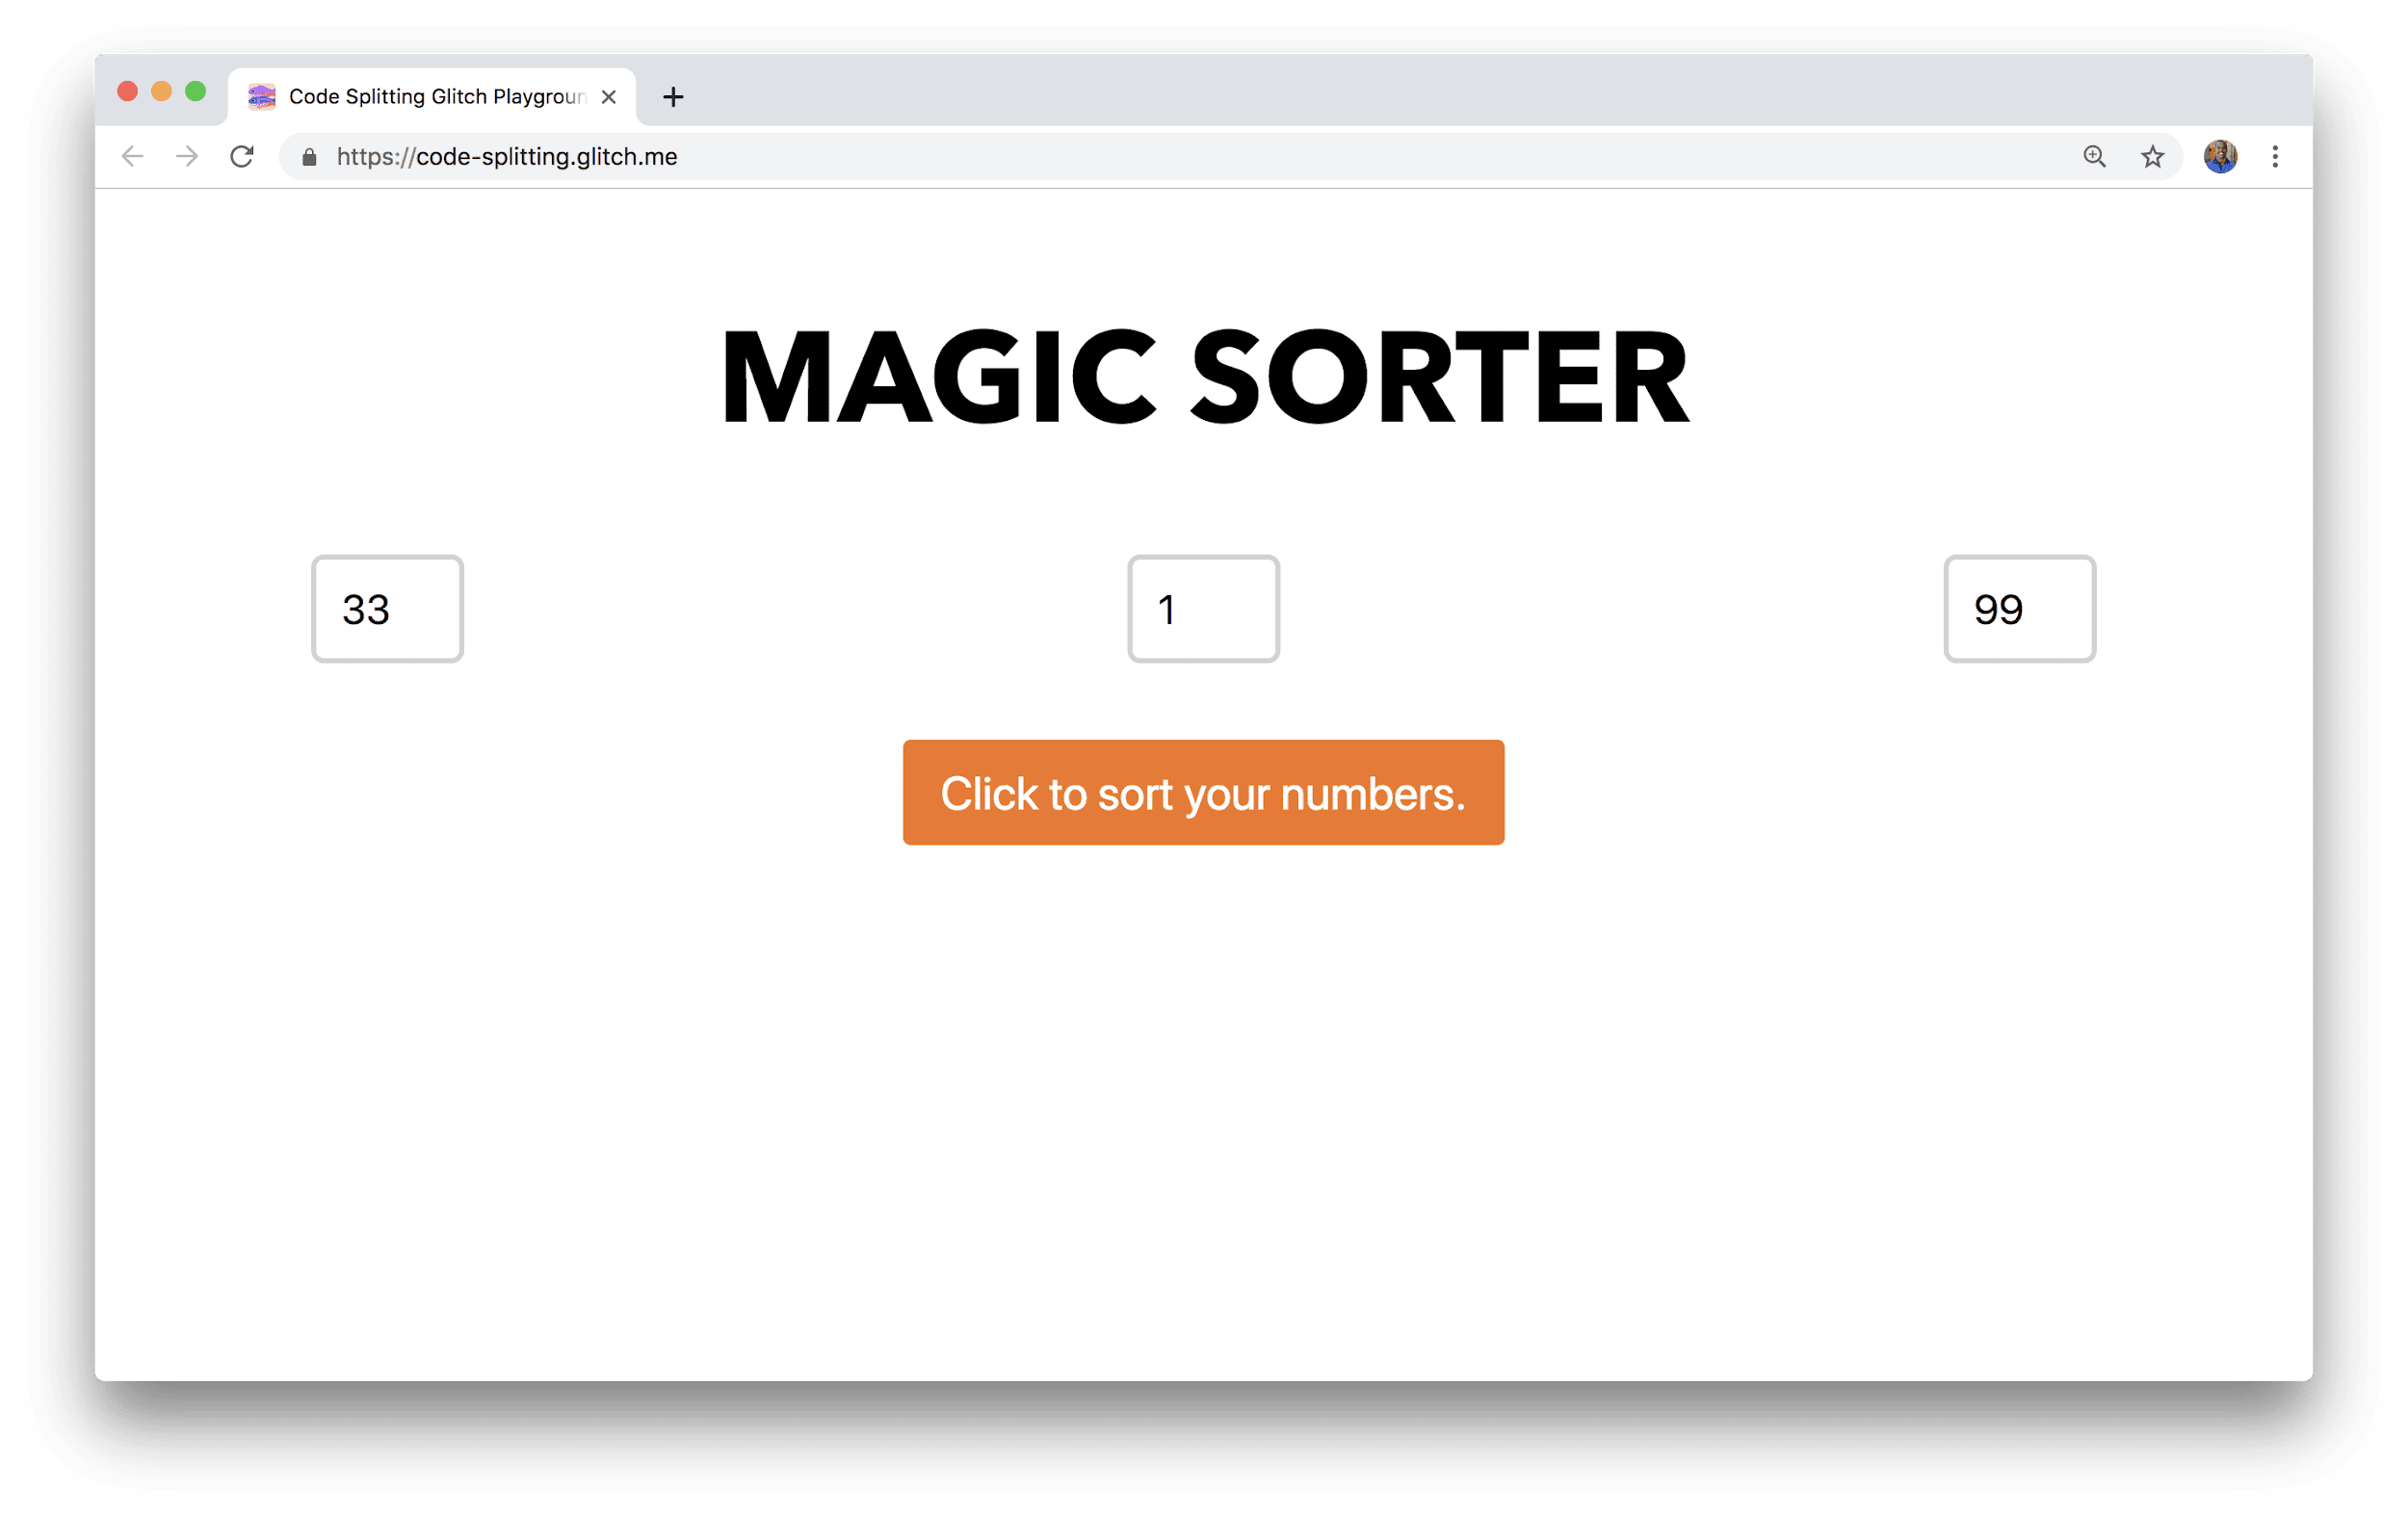 یک پنجره مرورگر برنامه ای با عنوان Magic Sorter را با سه فیلد برای وارد کردن اعداد و یک دکمه مرتب سازی نشان می دهد.